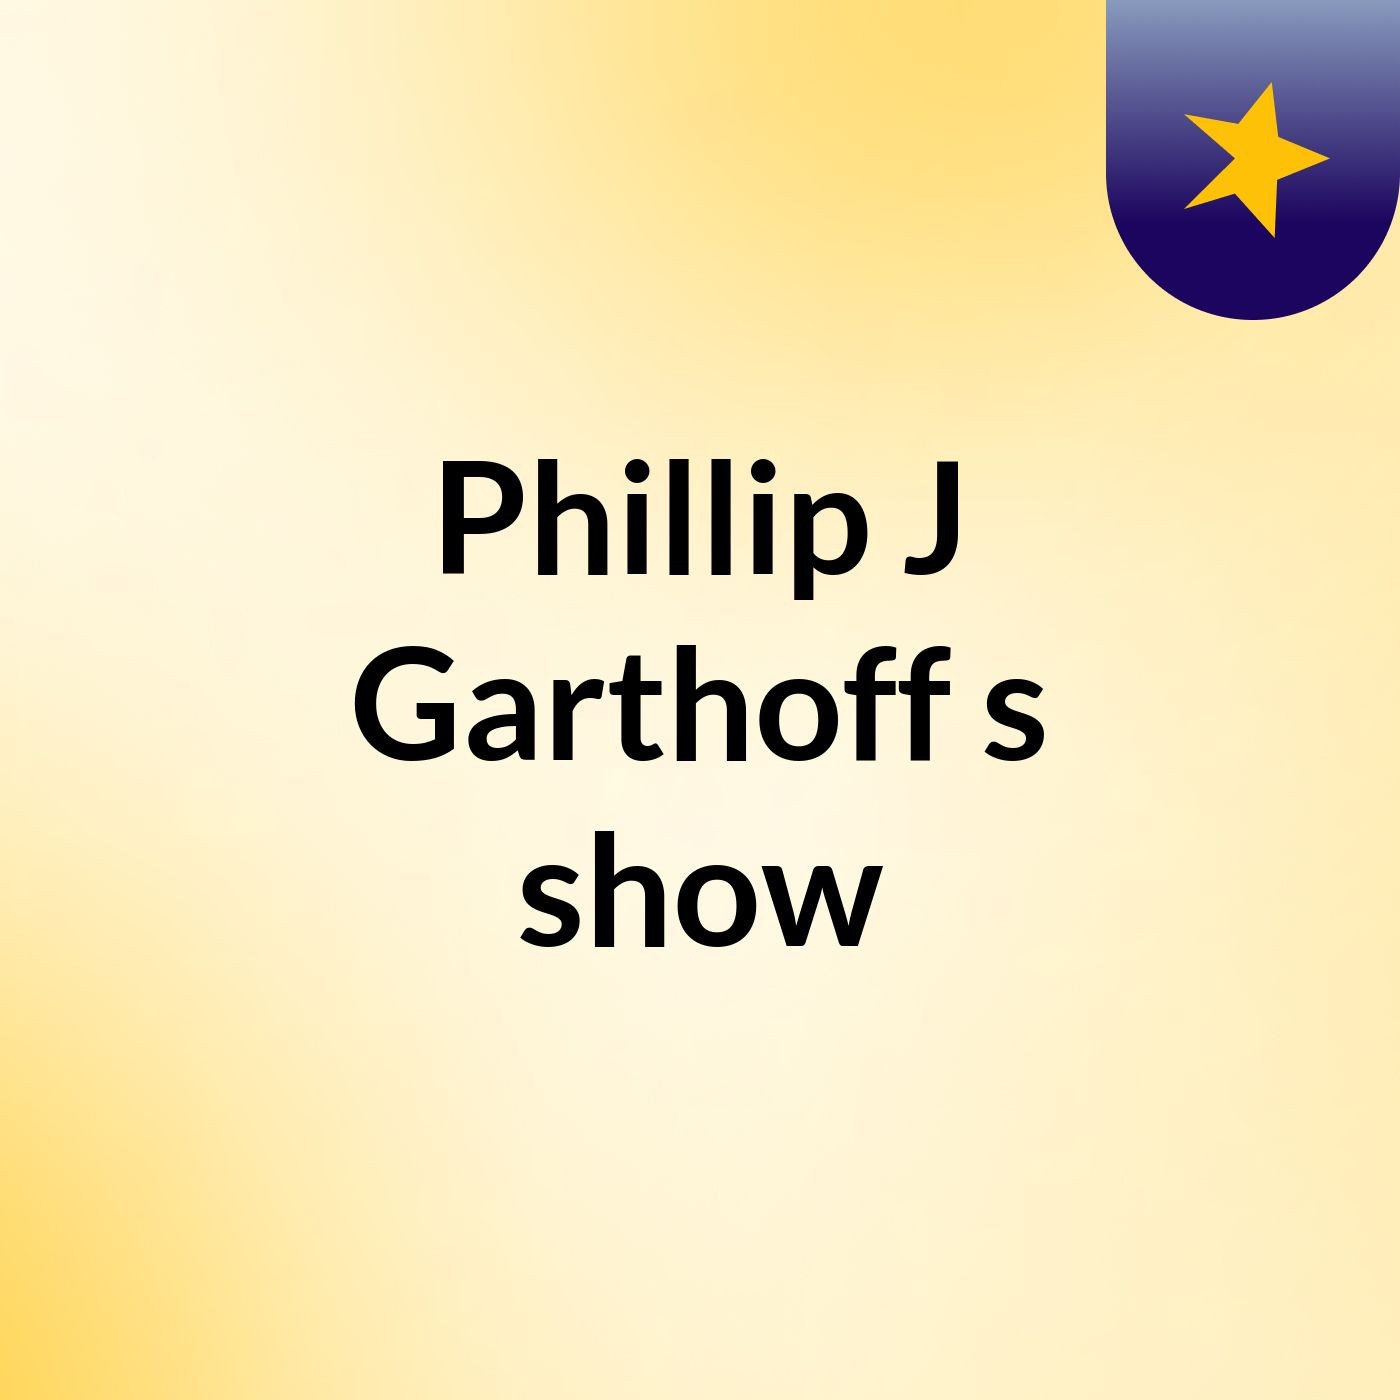 Episode 28 - Phillip J Garthoff's show